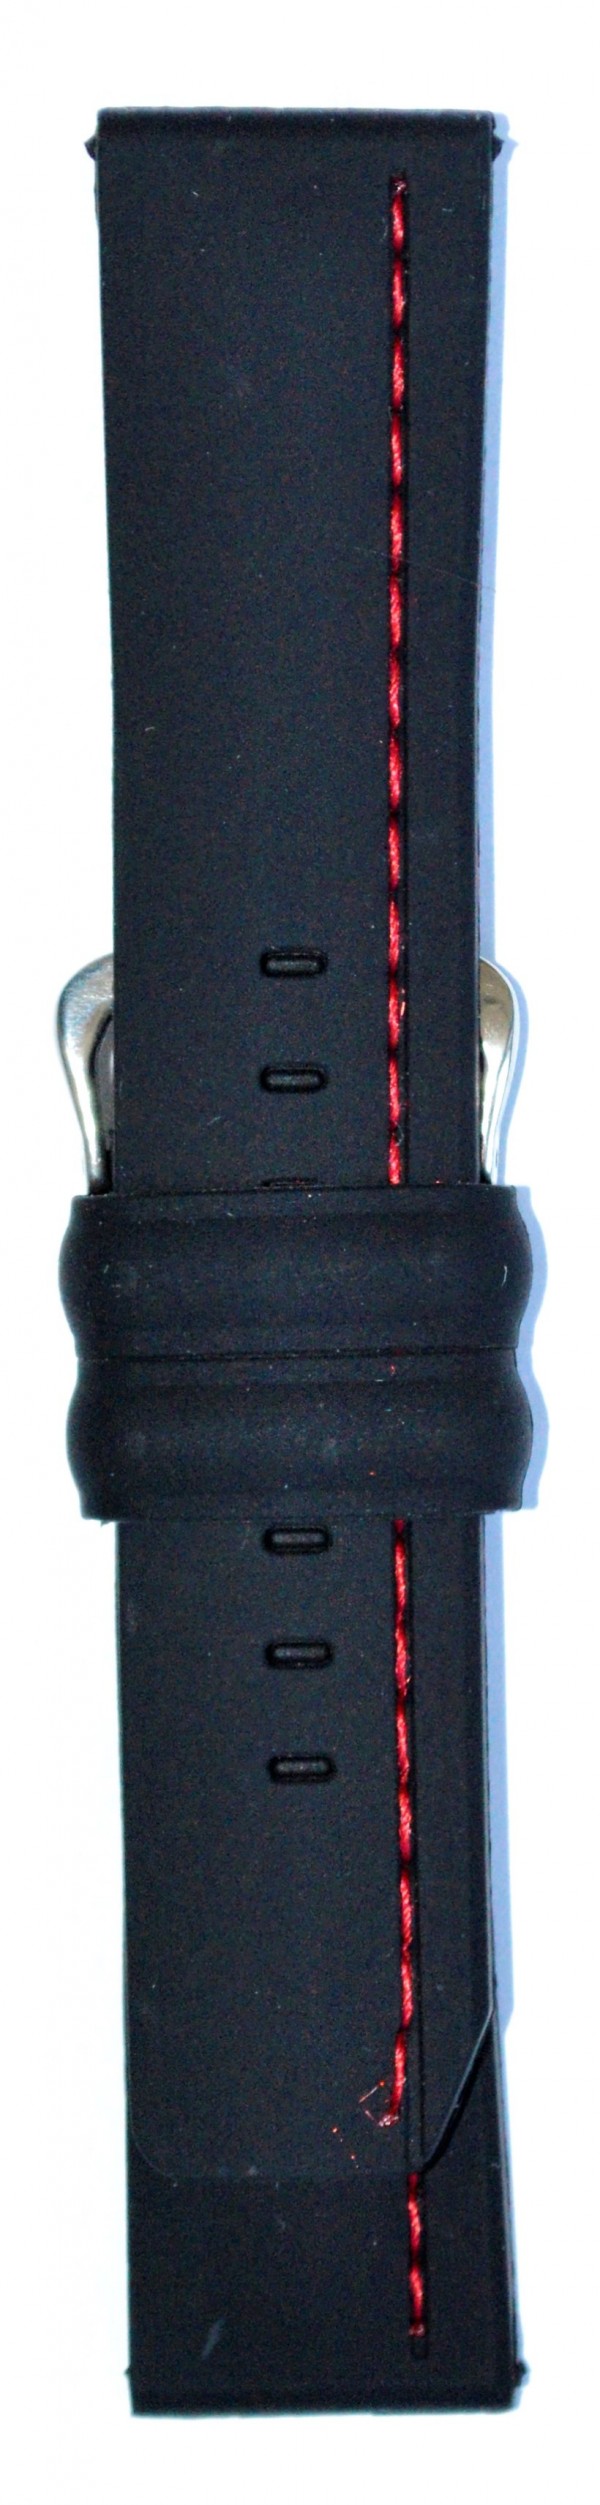 Silikonski kaiš - SK 24.33 Crna boja 24mm